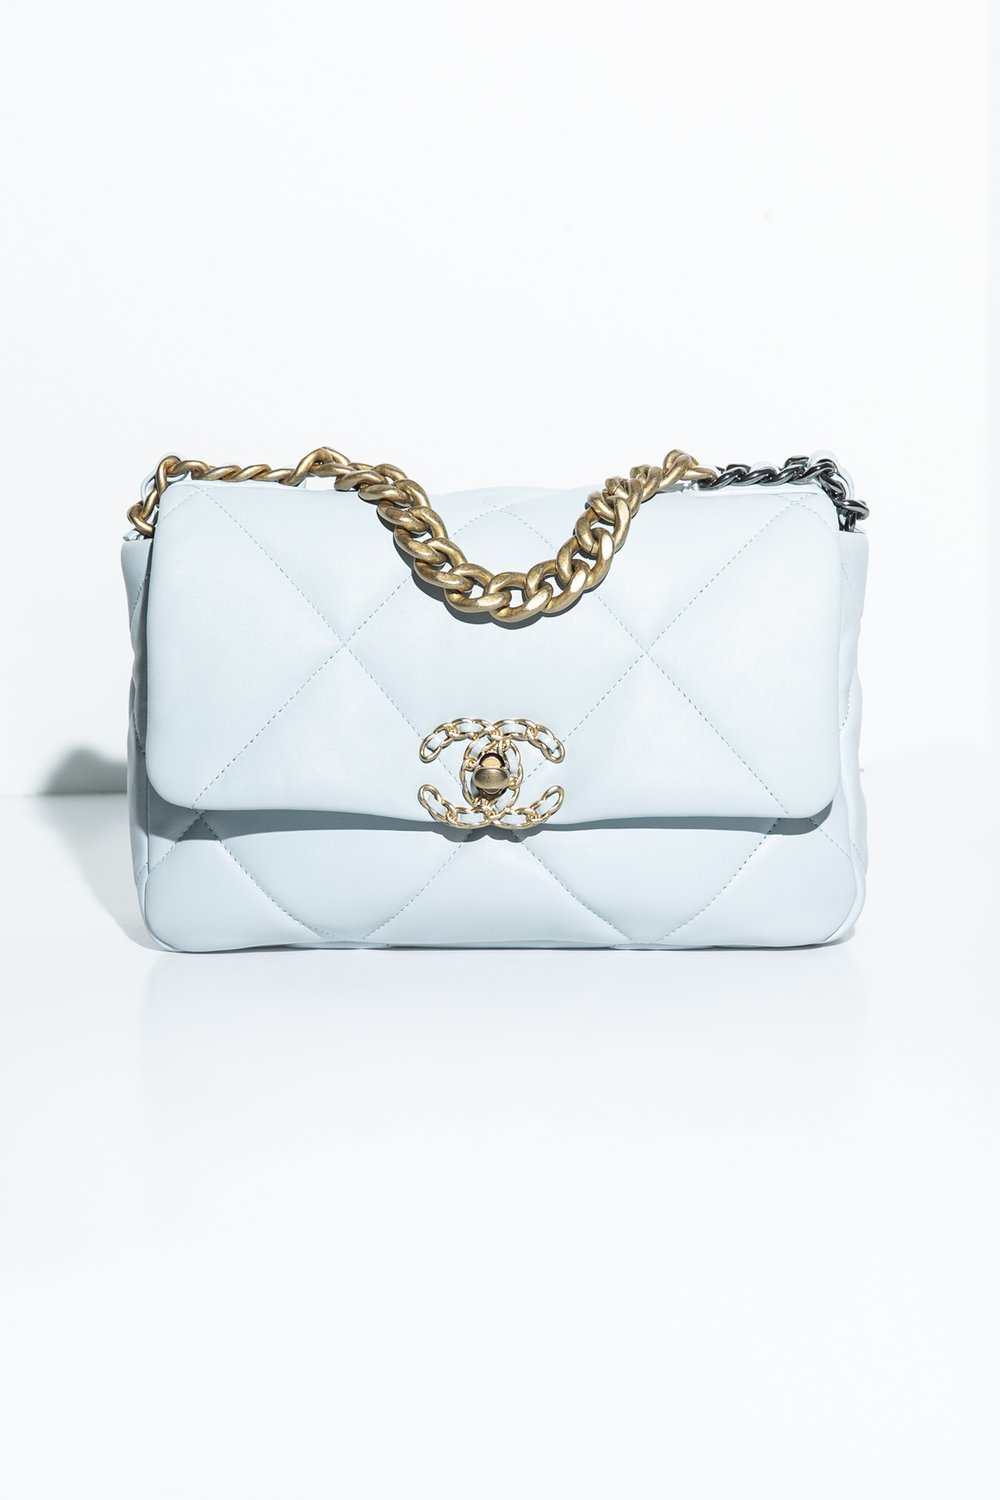 Chanel 19 Vs Classic Flap Bag Comparison Review & Outfits